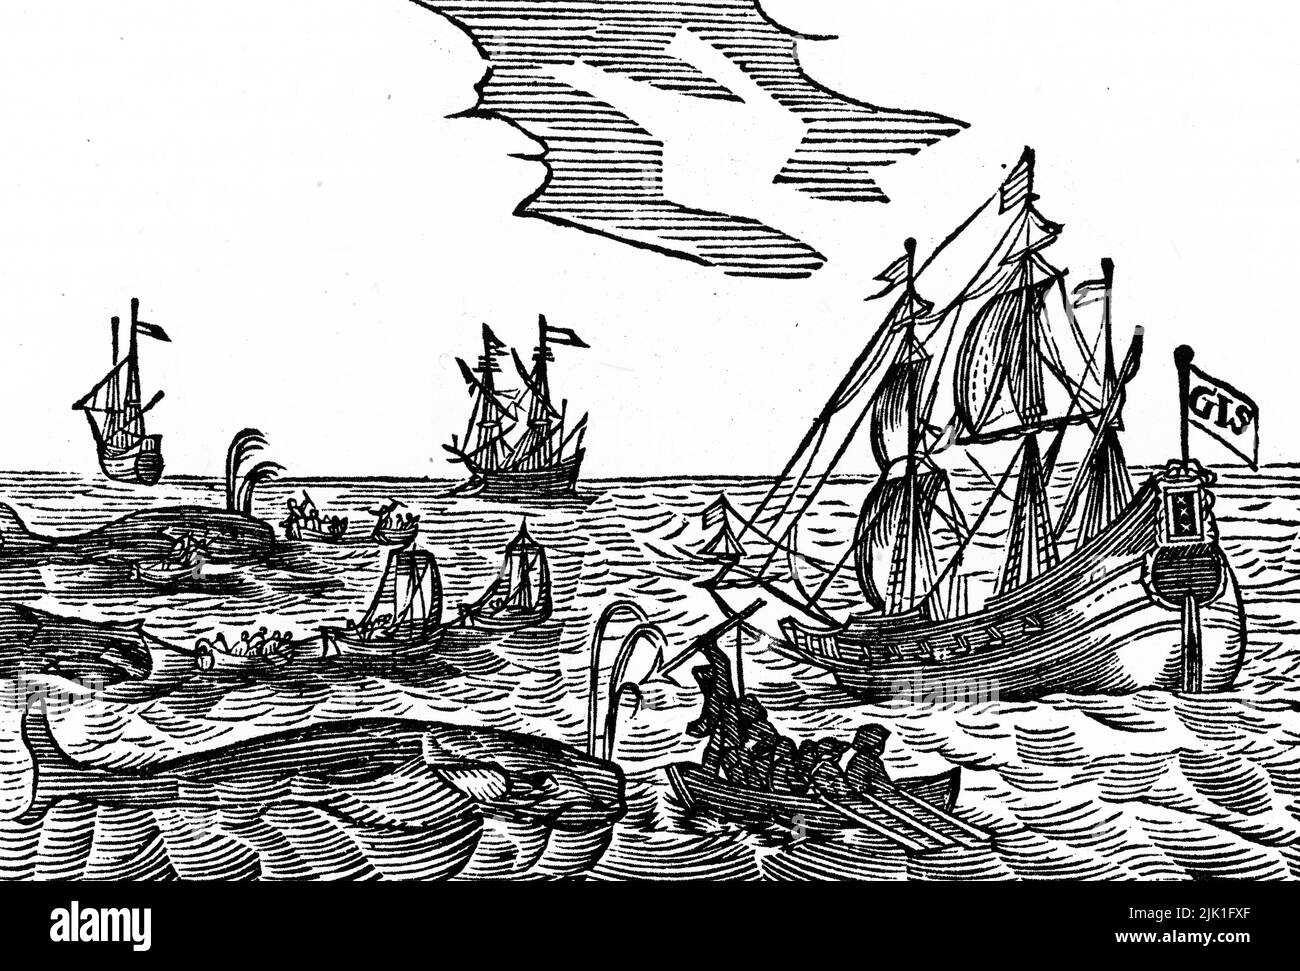 Chasse à la baleine, 1634. Coupe de bois du journal de Jacob Segersz van der Brugge. Jacob Segersz van der Brugge a publié son journal peu de temps après son retour de la chasse à la baleine en 1634. Banque D'Images